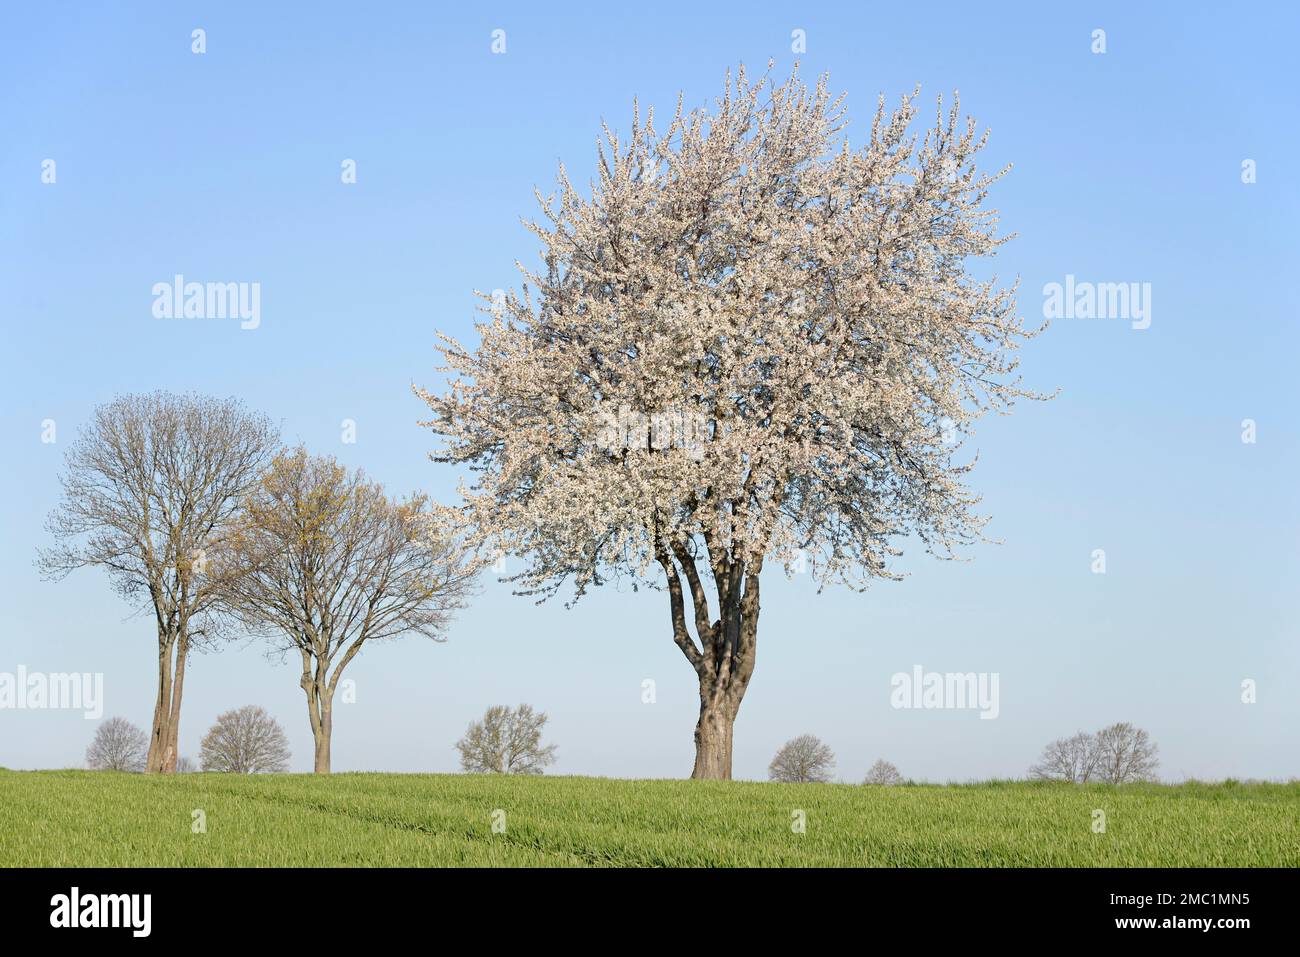 Laubbäume an einem grünen Getreidefeld, Kirschbaum (Prunus) in Blüte,  blauer Himmel, Nordrhein-Westfalen, Deutschland Stockfotografie - Alamy